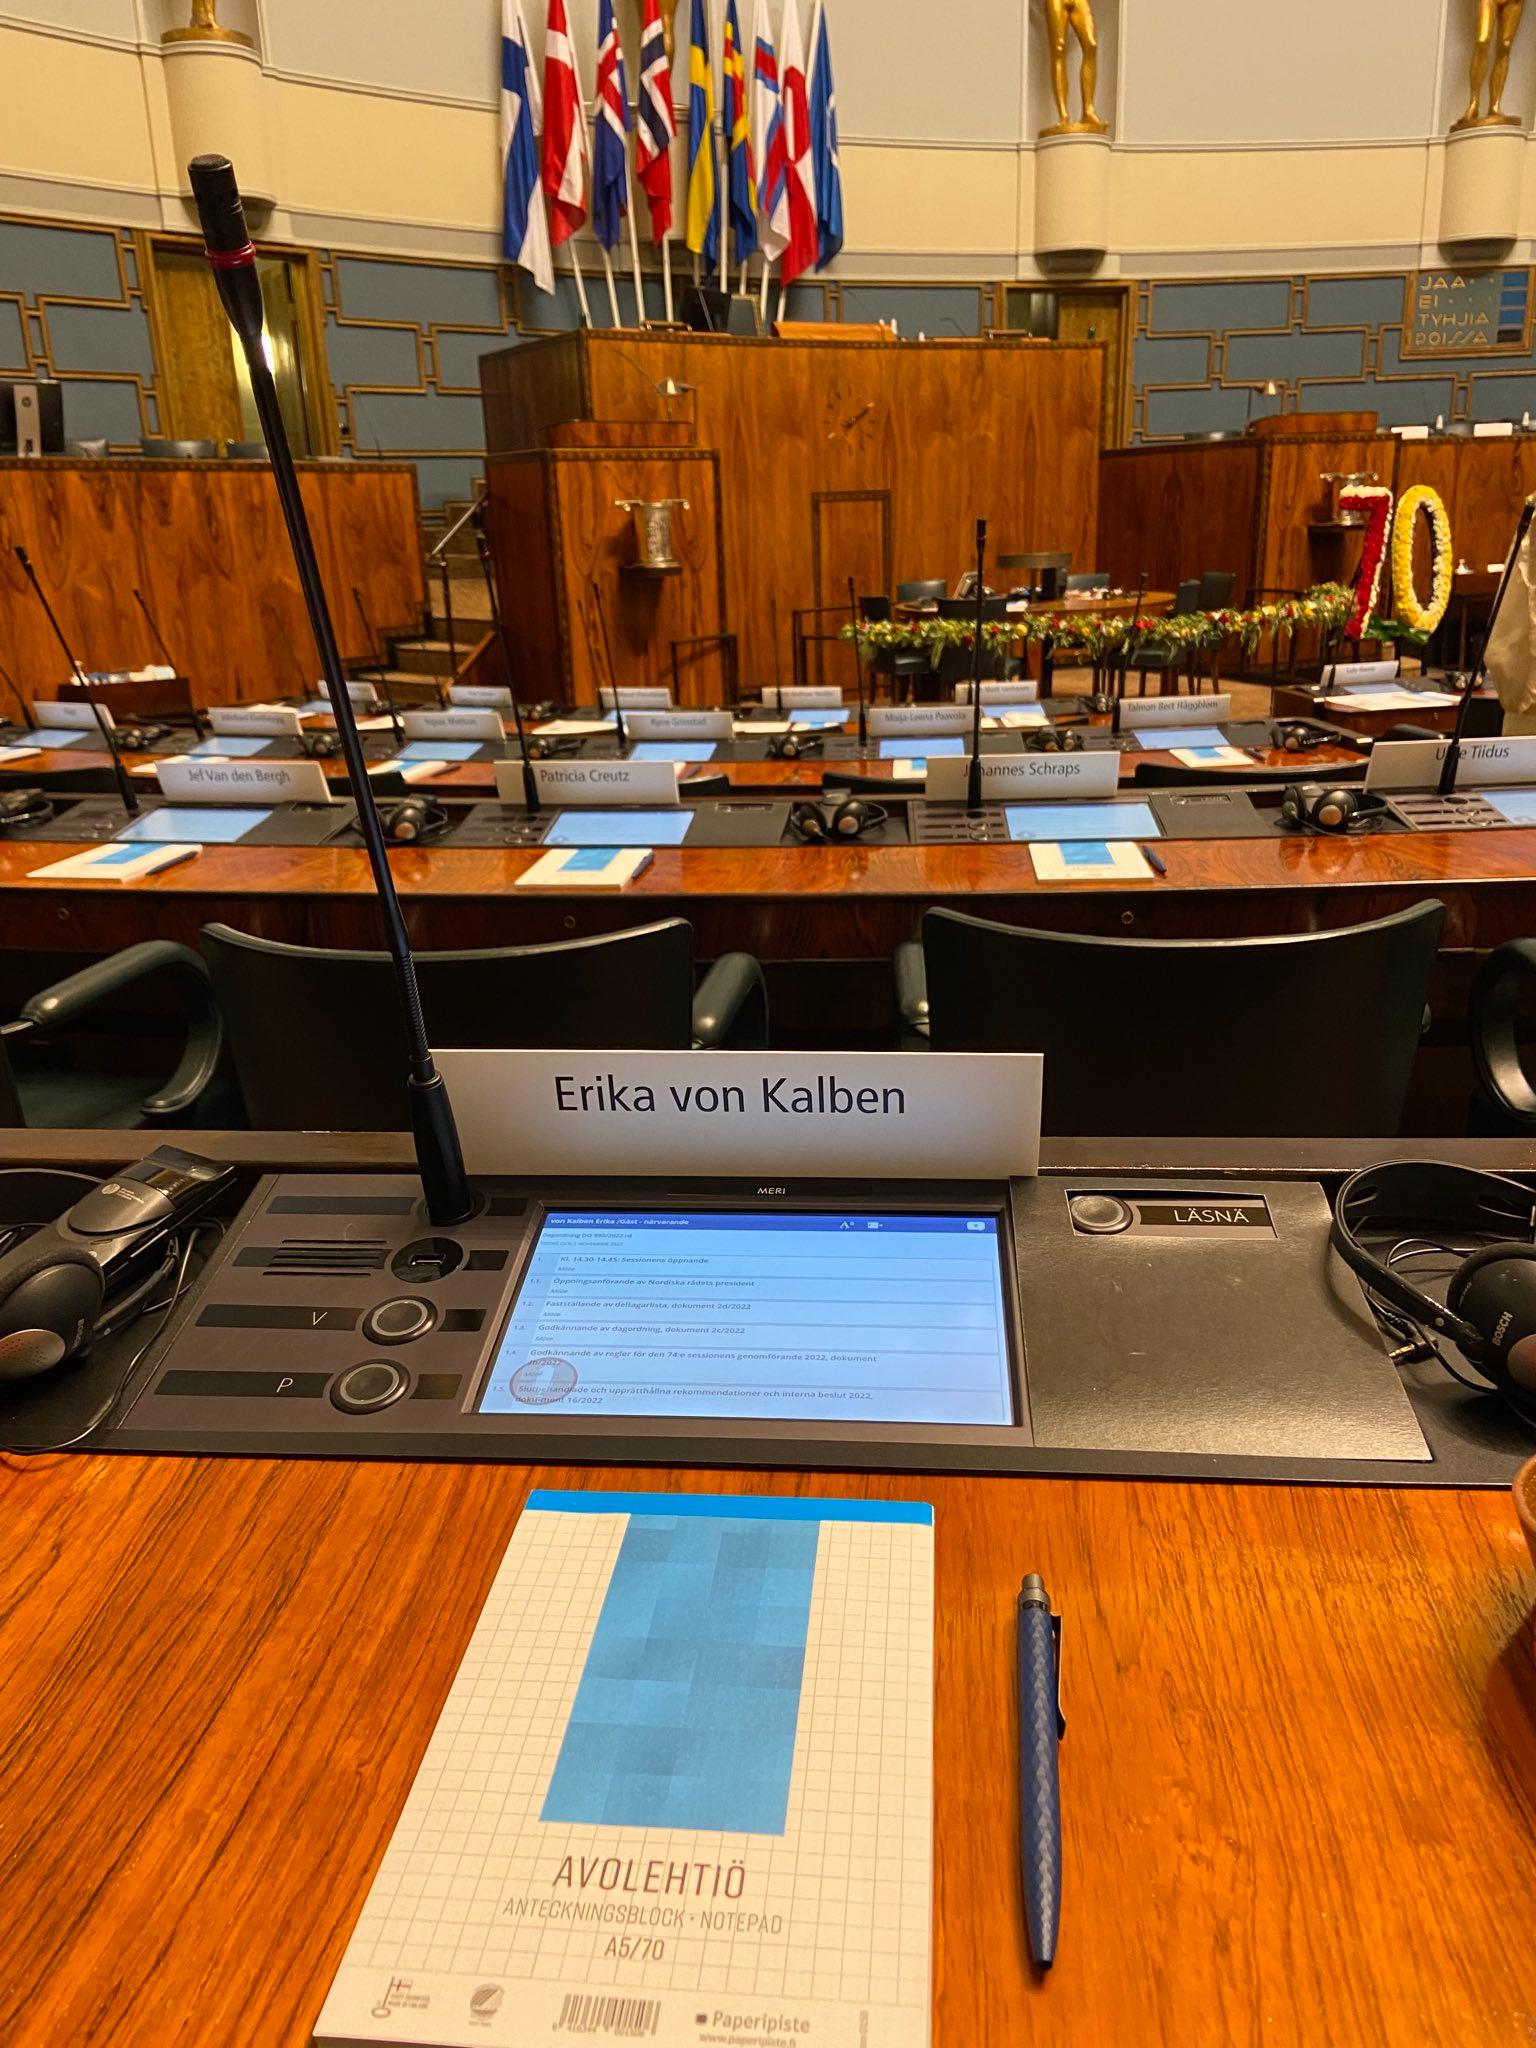 Foto von Eka von Kalbens Sitzplatz im leeren Parlament. Es gibt ein Namensschild, ein MIkro, ein eingebautes Tablet und einen Notizblock mit Kugelschreiber auf dem Tisch. Im Hintergrund sieht man das Präsidium mit den skandinavischen Flaggen.